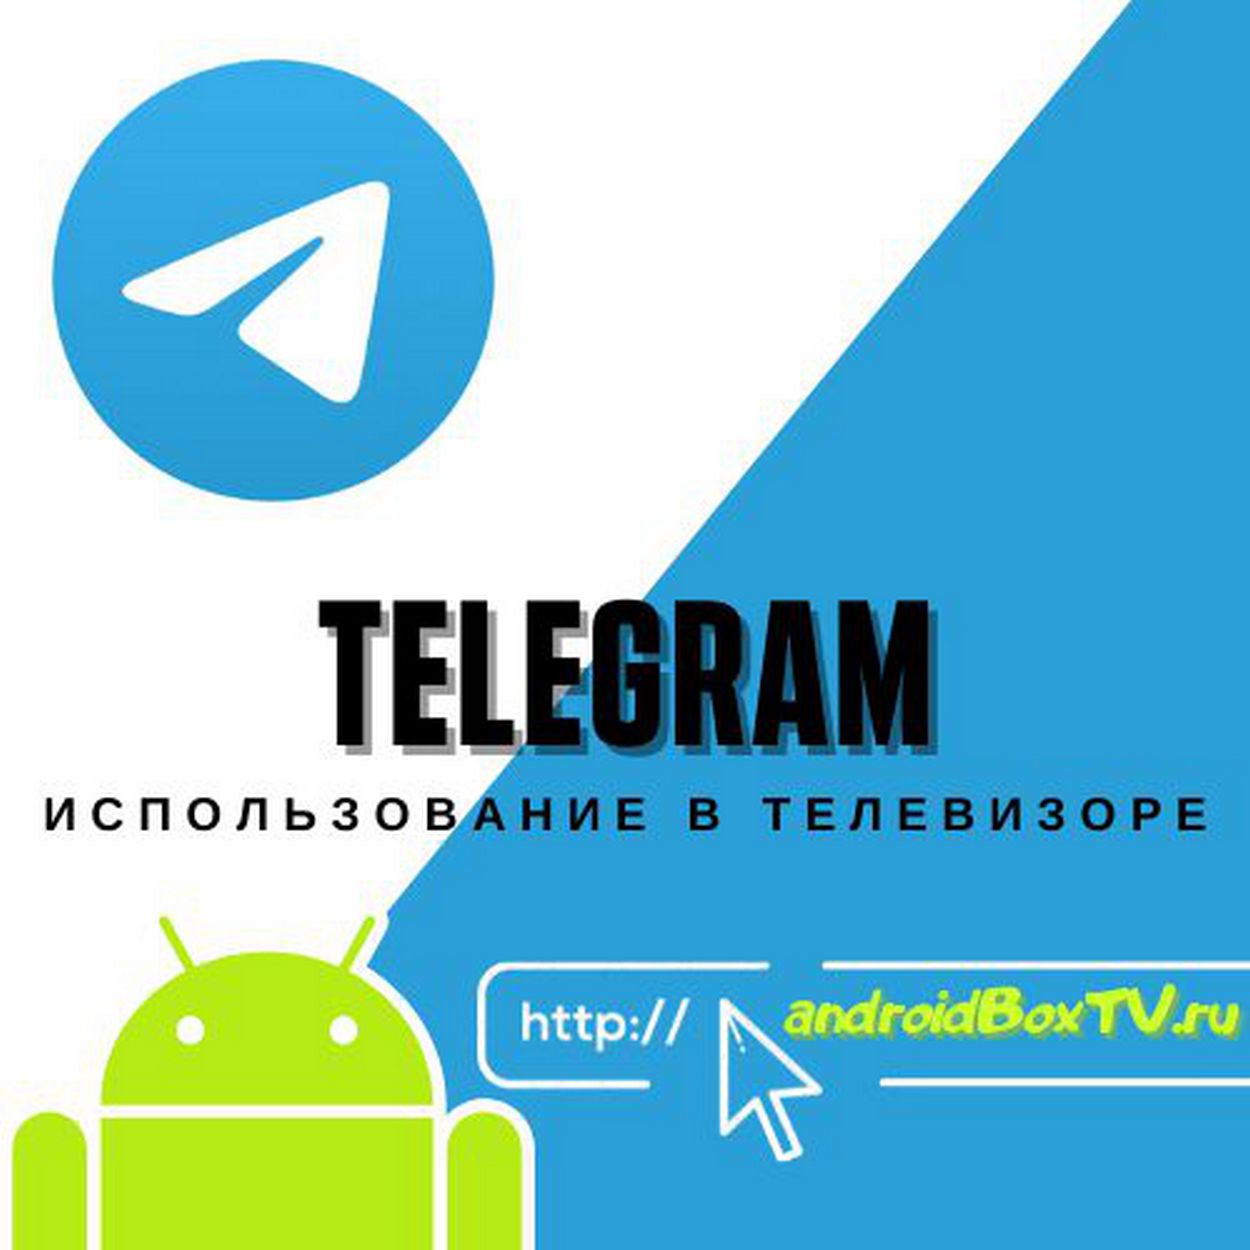 Приложения телеграмм для андроид тв (120) фото